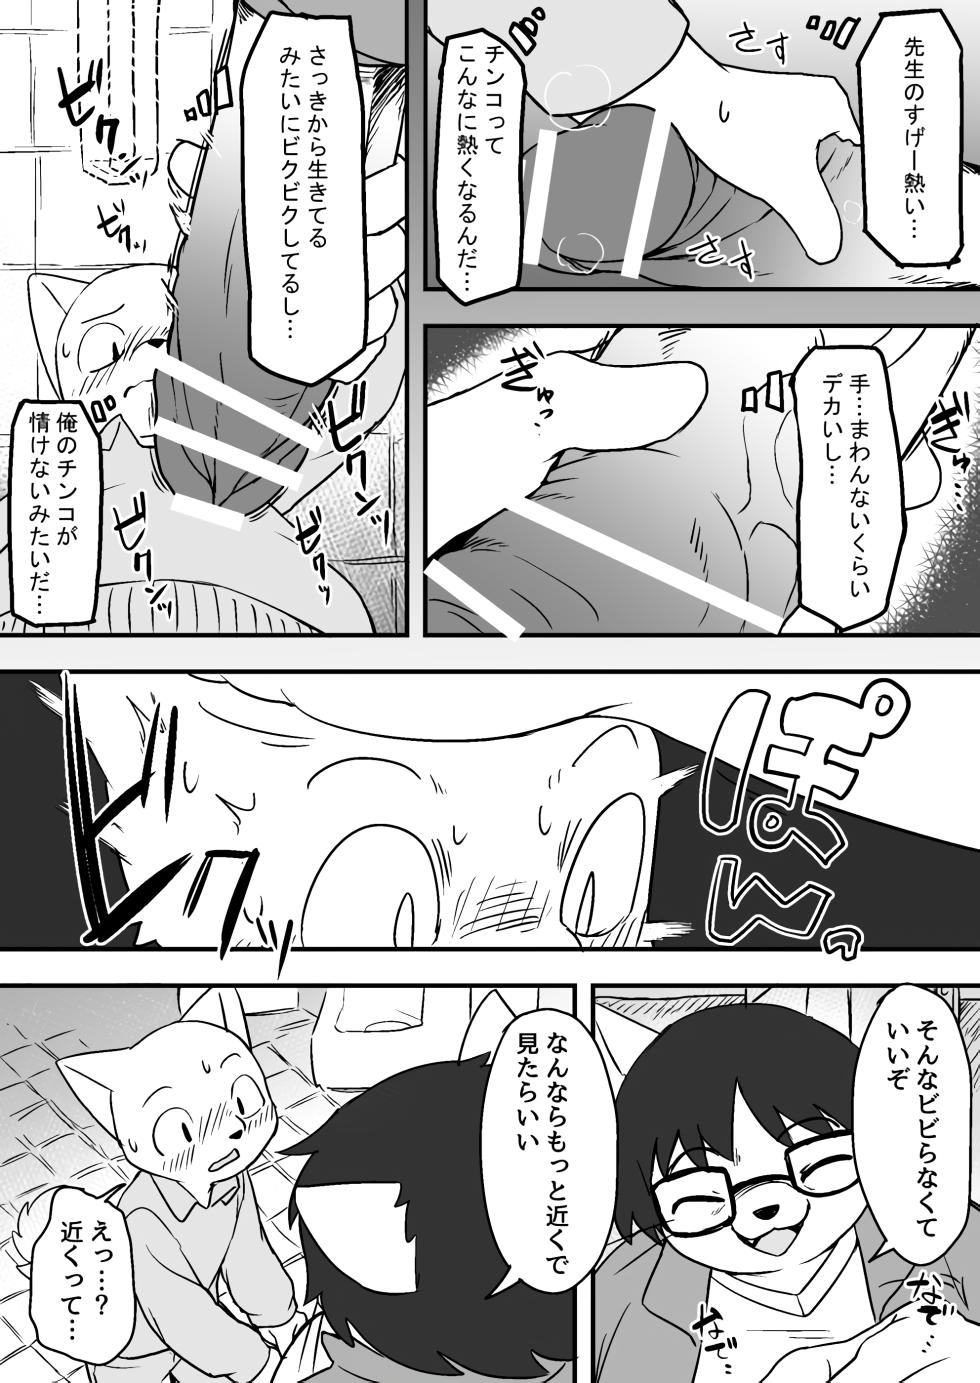 Manmosu Marimo - Sensei Story #1 (Raw) - Page 5